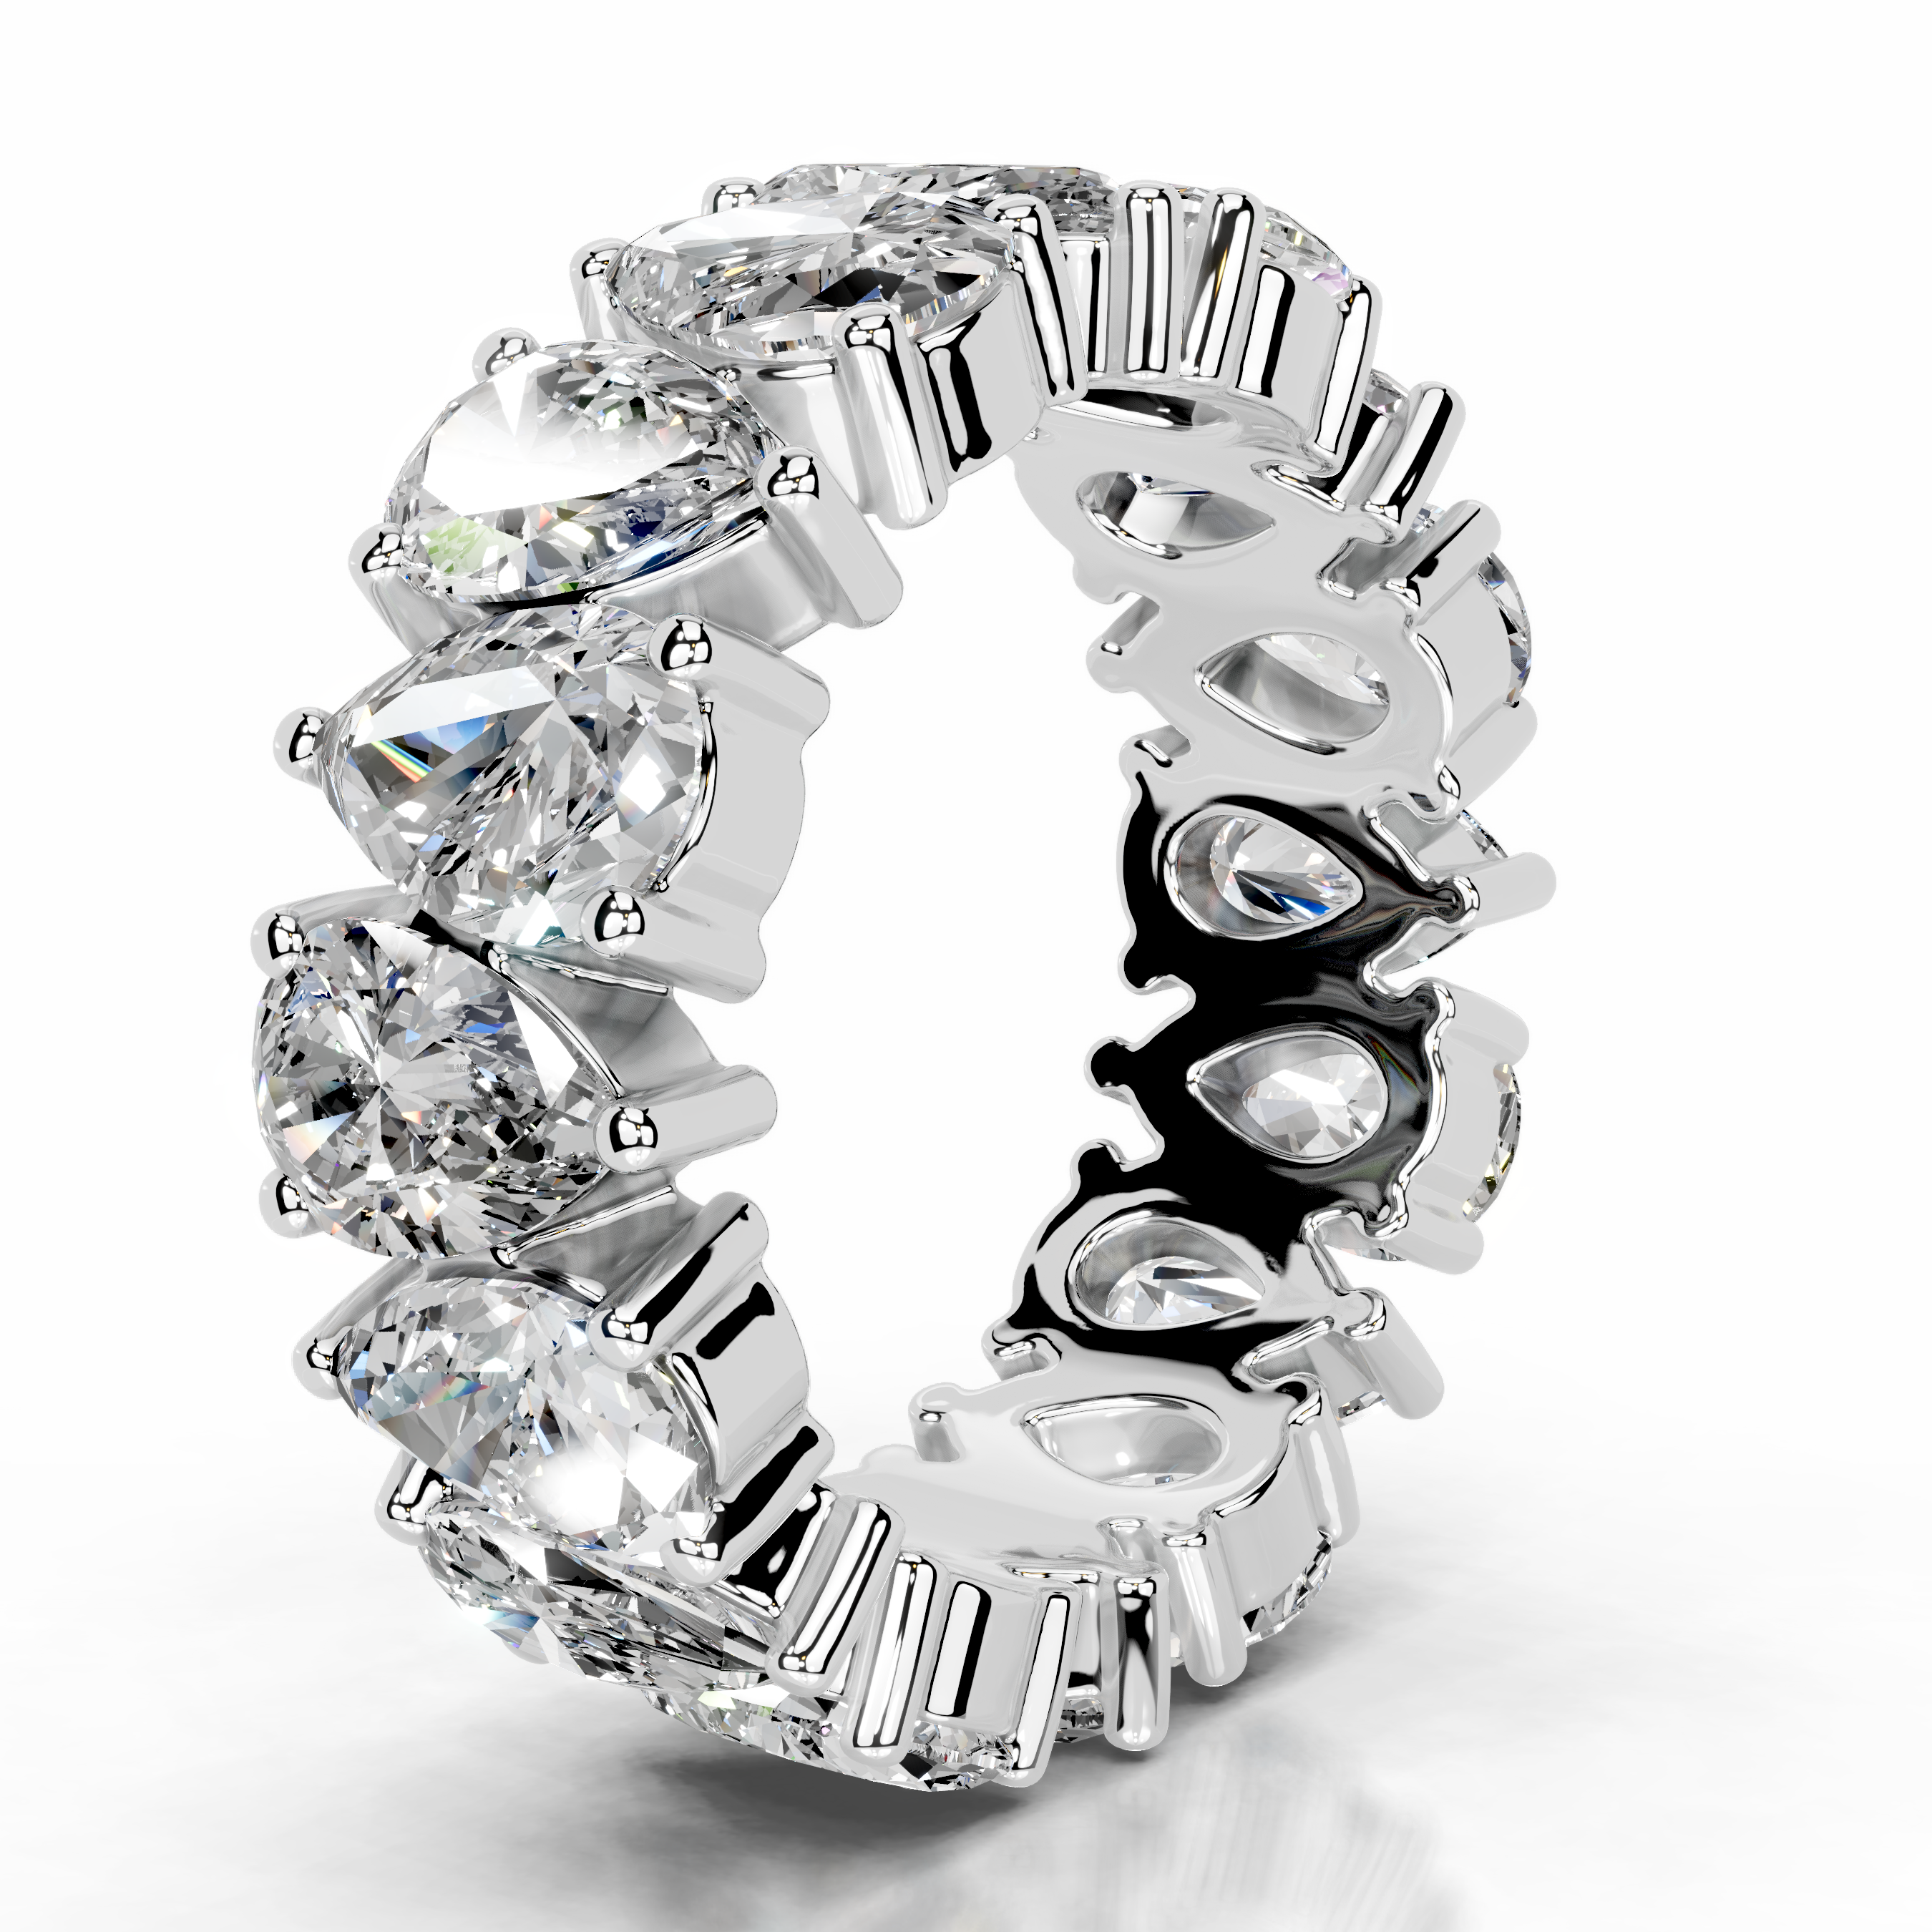 Sarah Diamond Wedding Ring   (6 Carat) -14K White Gold